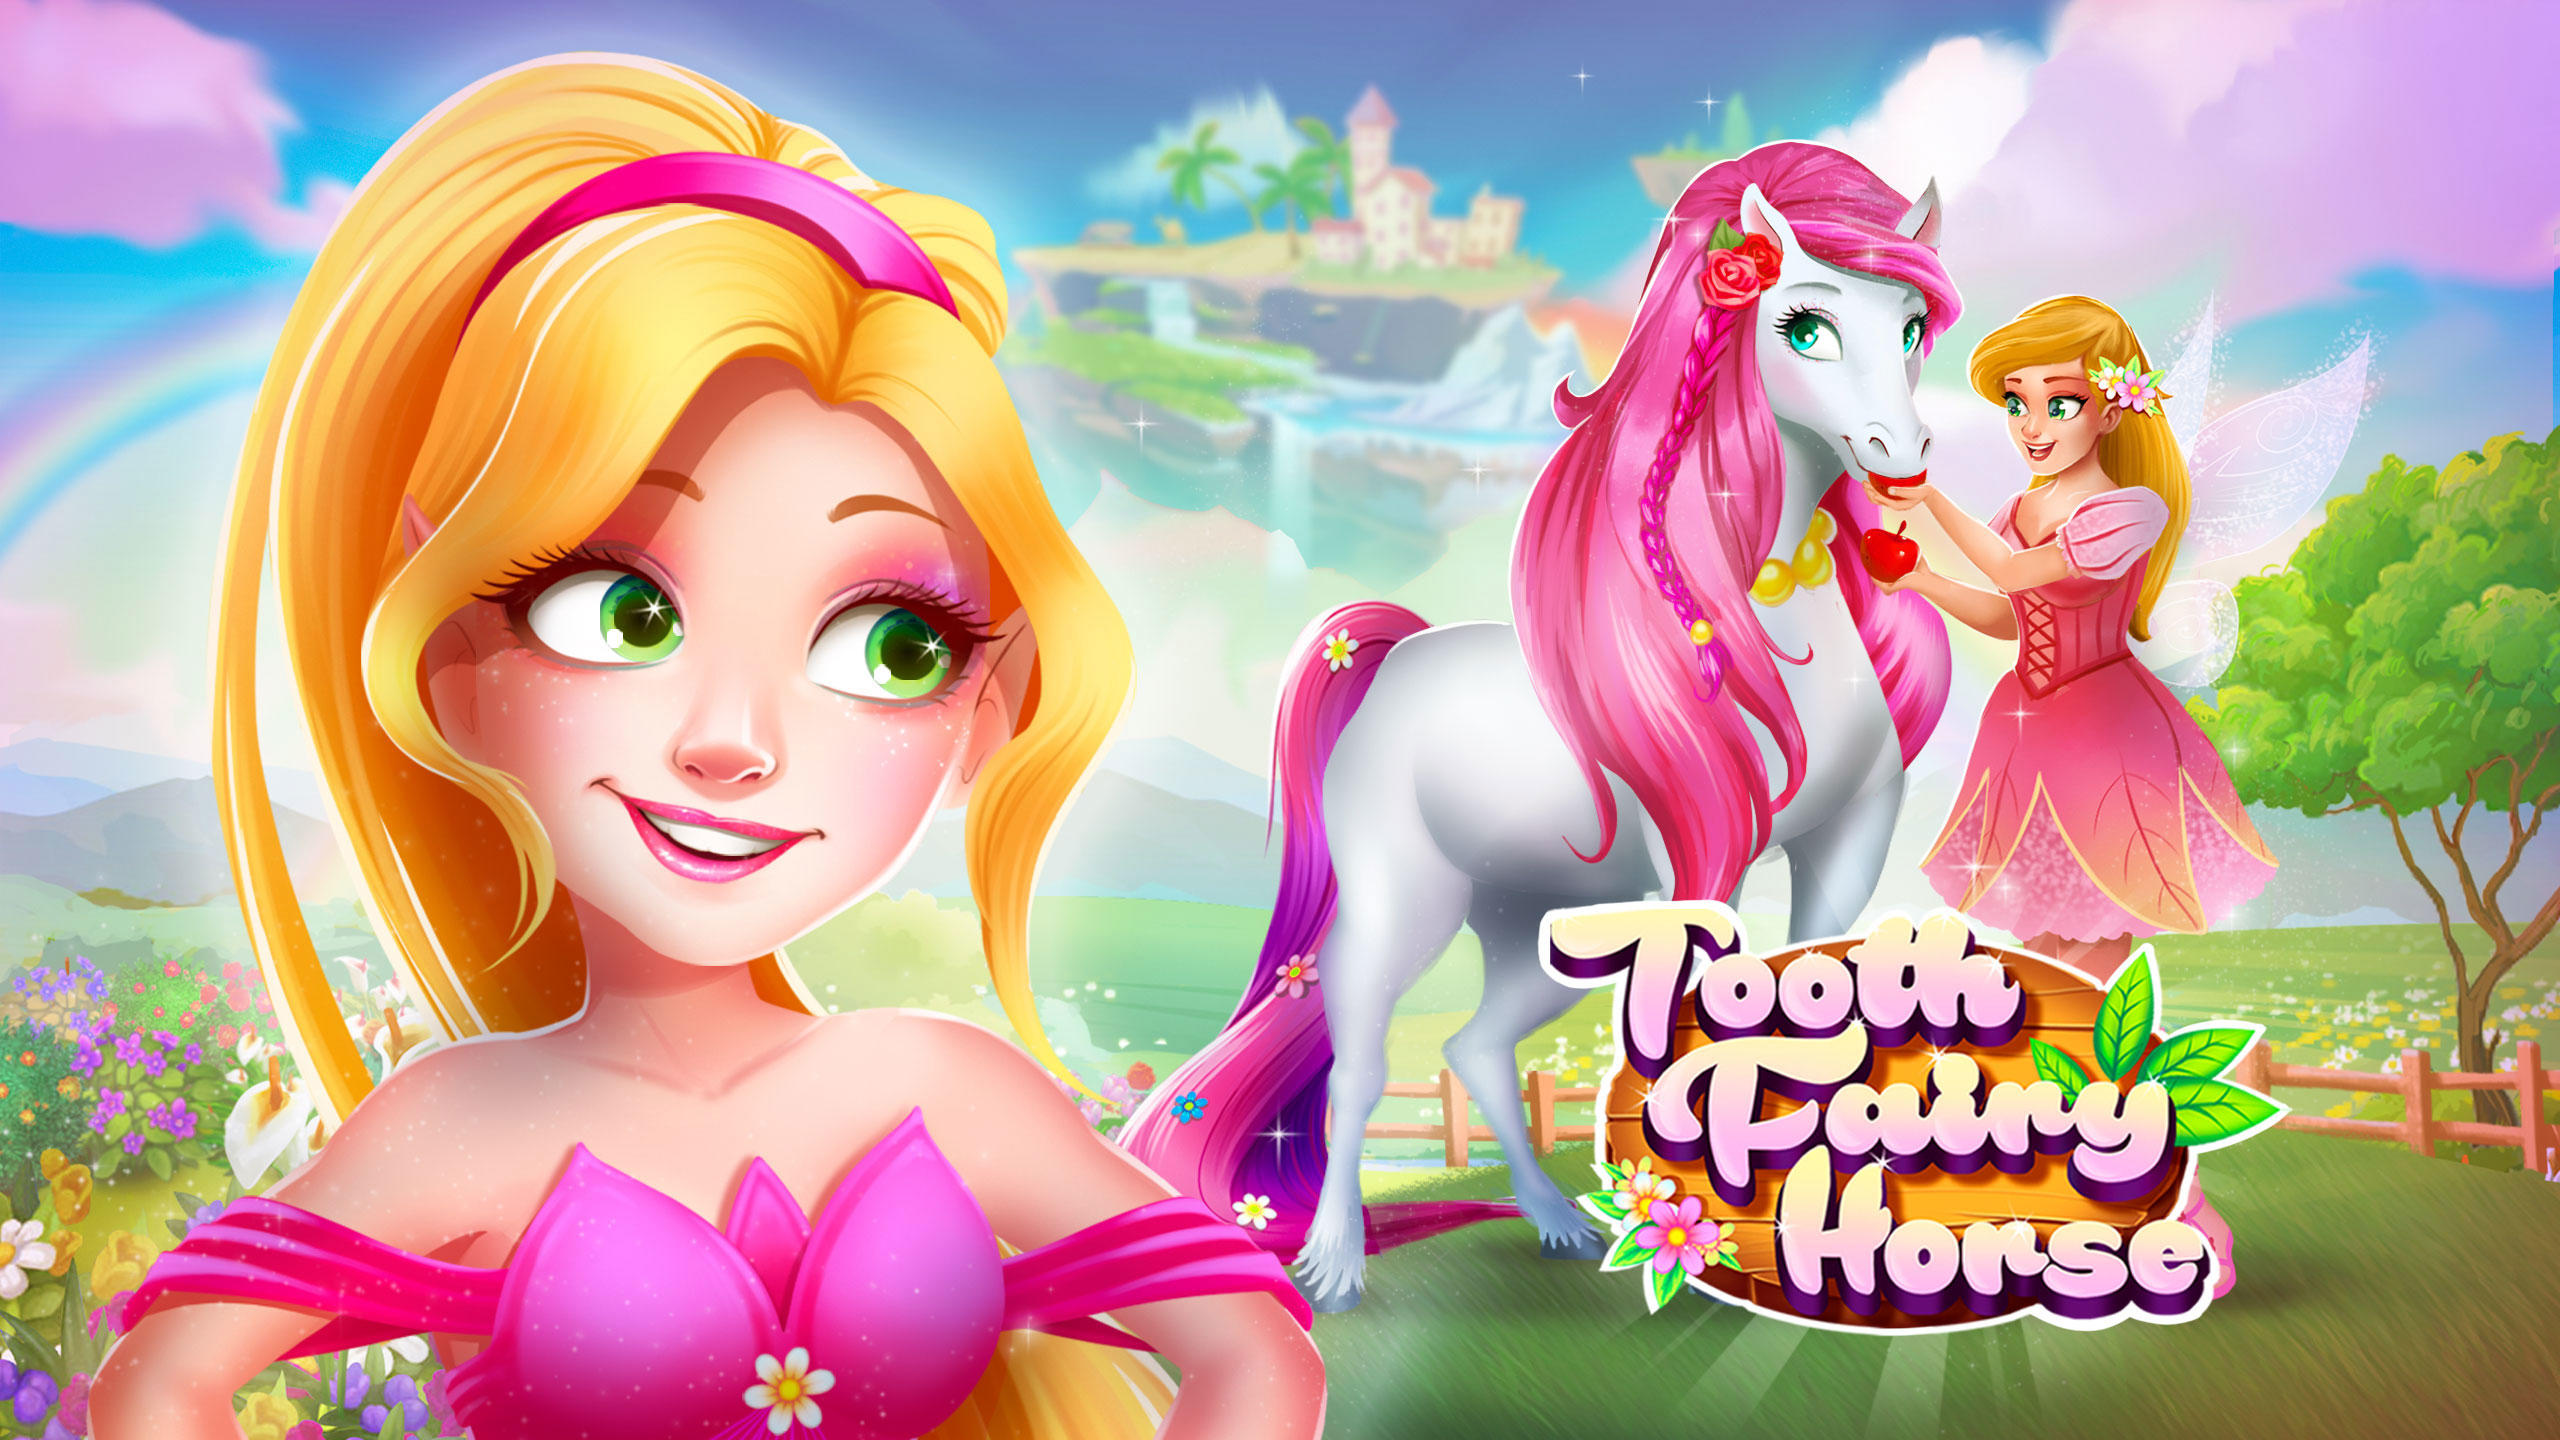 Screenshot 1 of Ngipin Fairy Horse - Pony Care 3.7.0